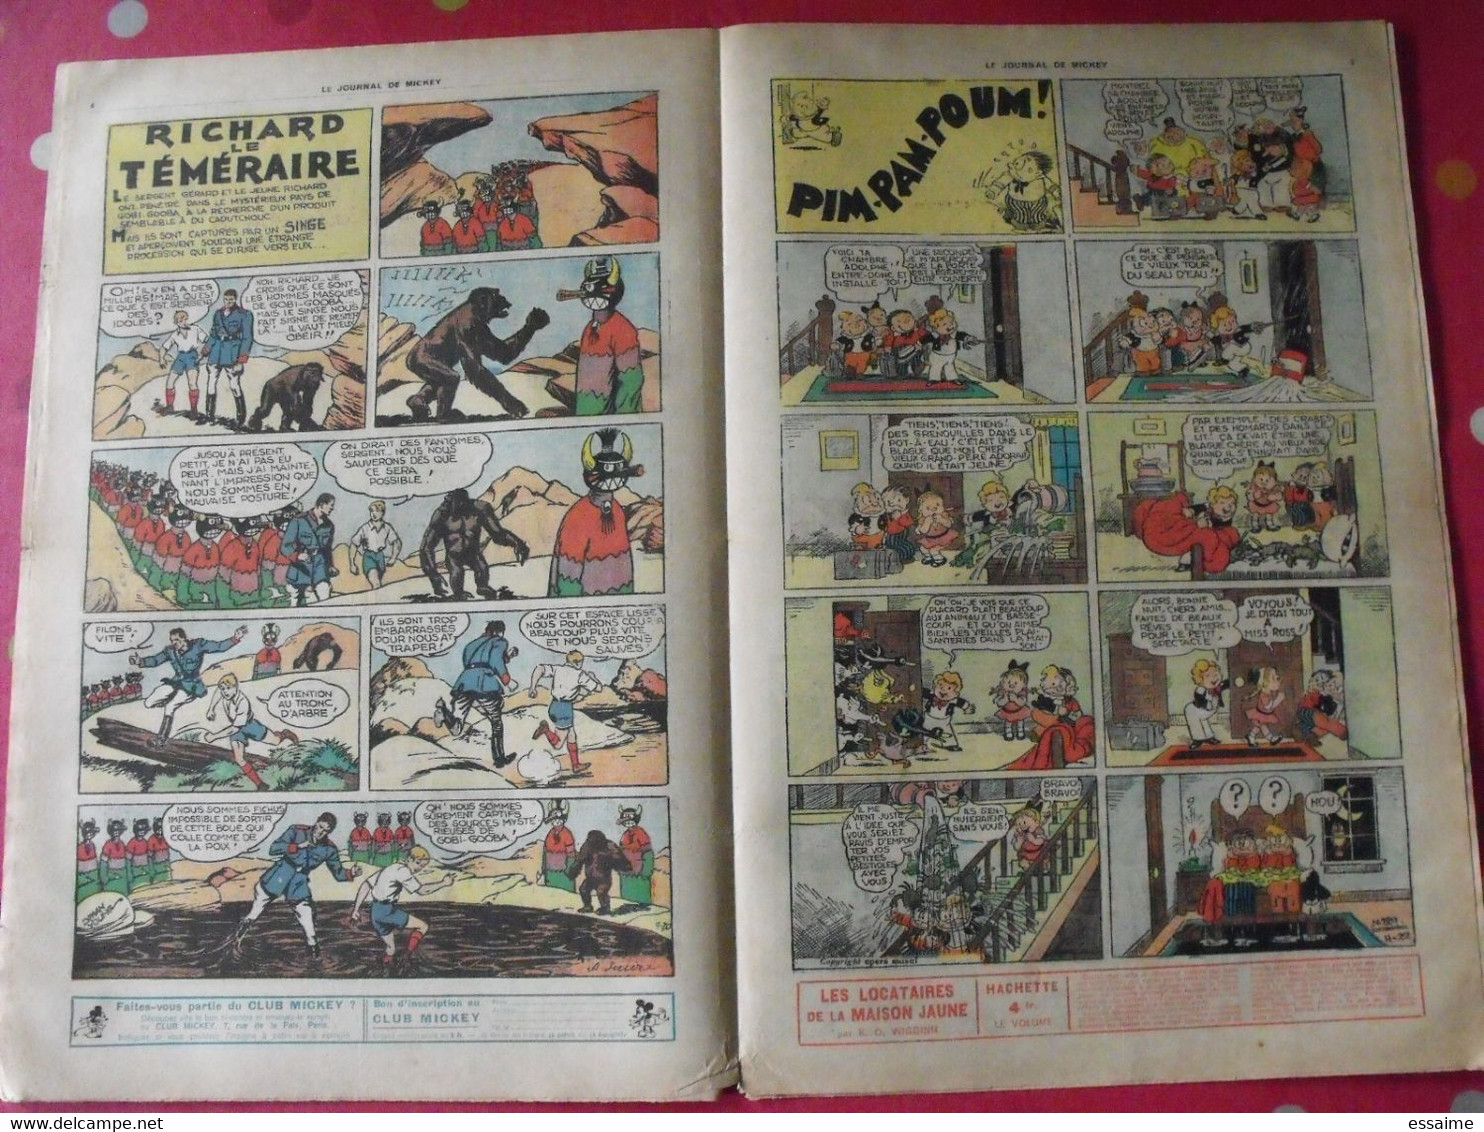 5 n° du journal de Mickey 1937. jojo richard pim pam poum jim la jungle malheurs d'annie donald